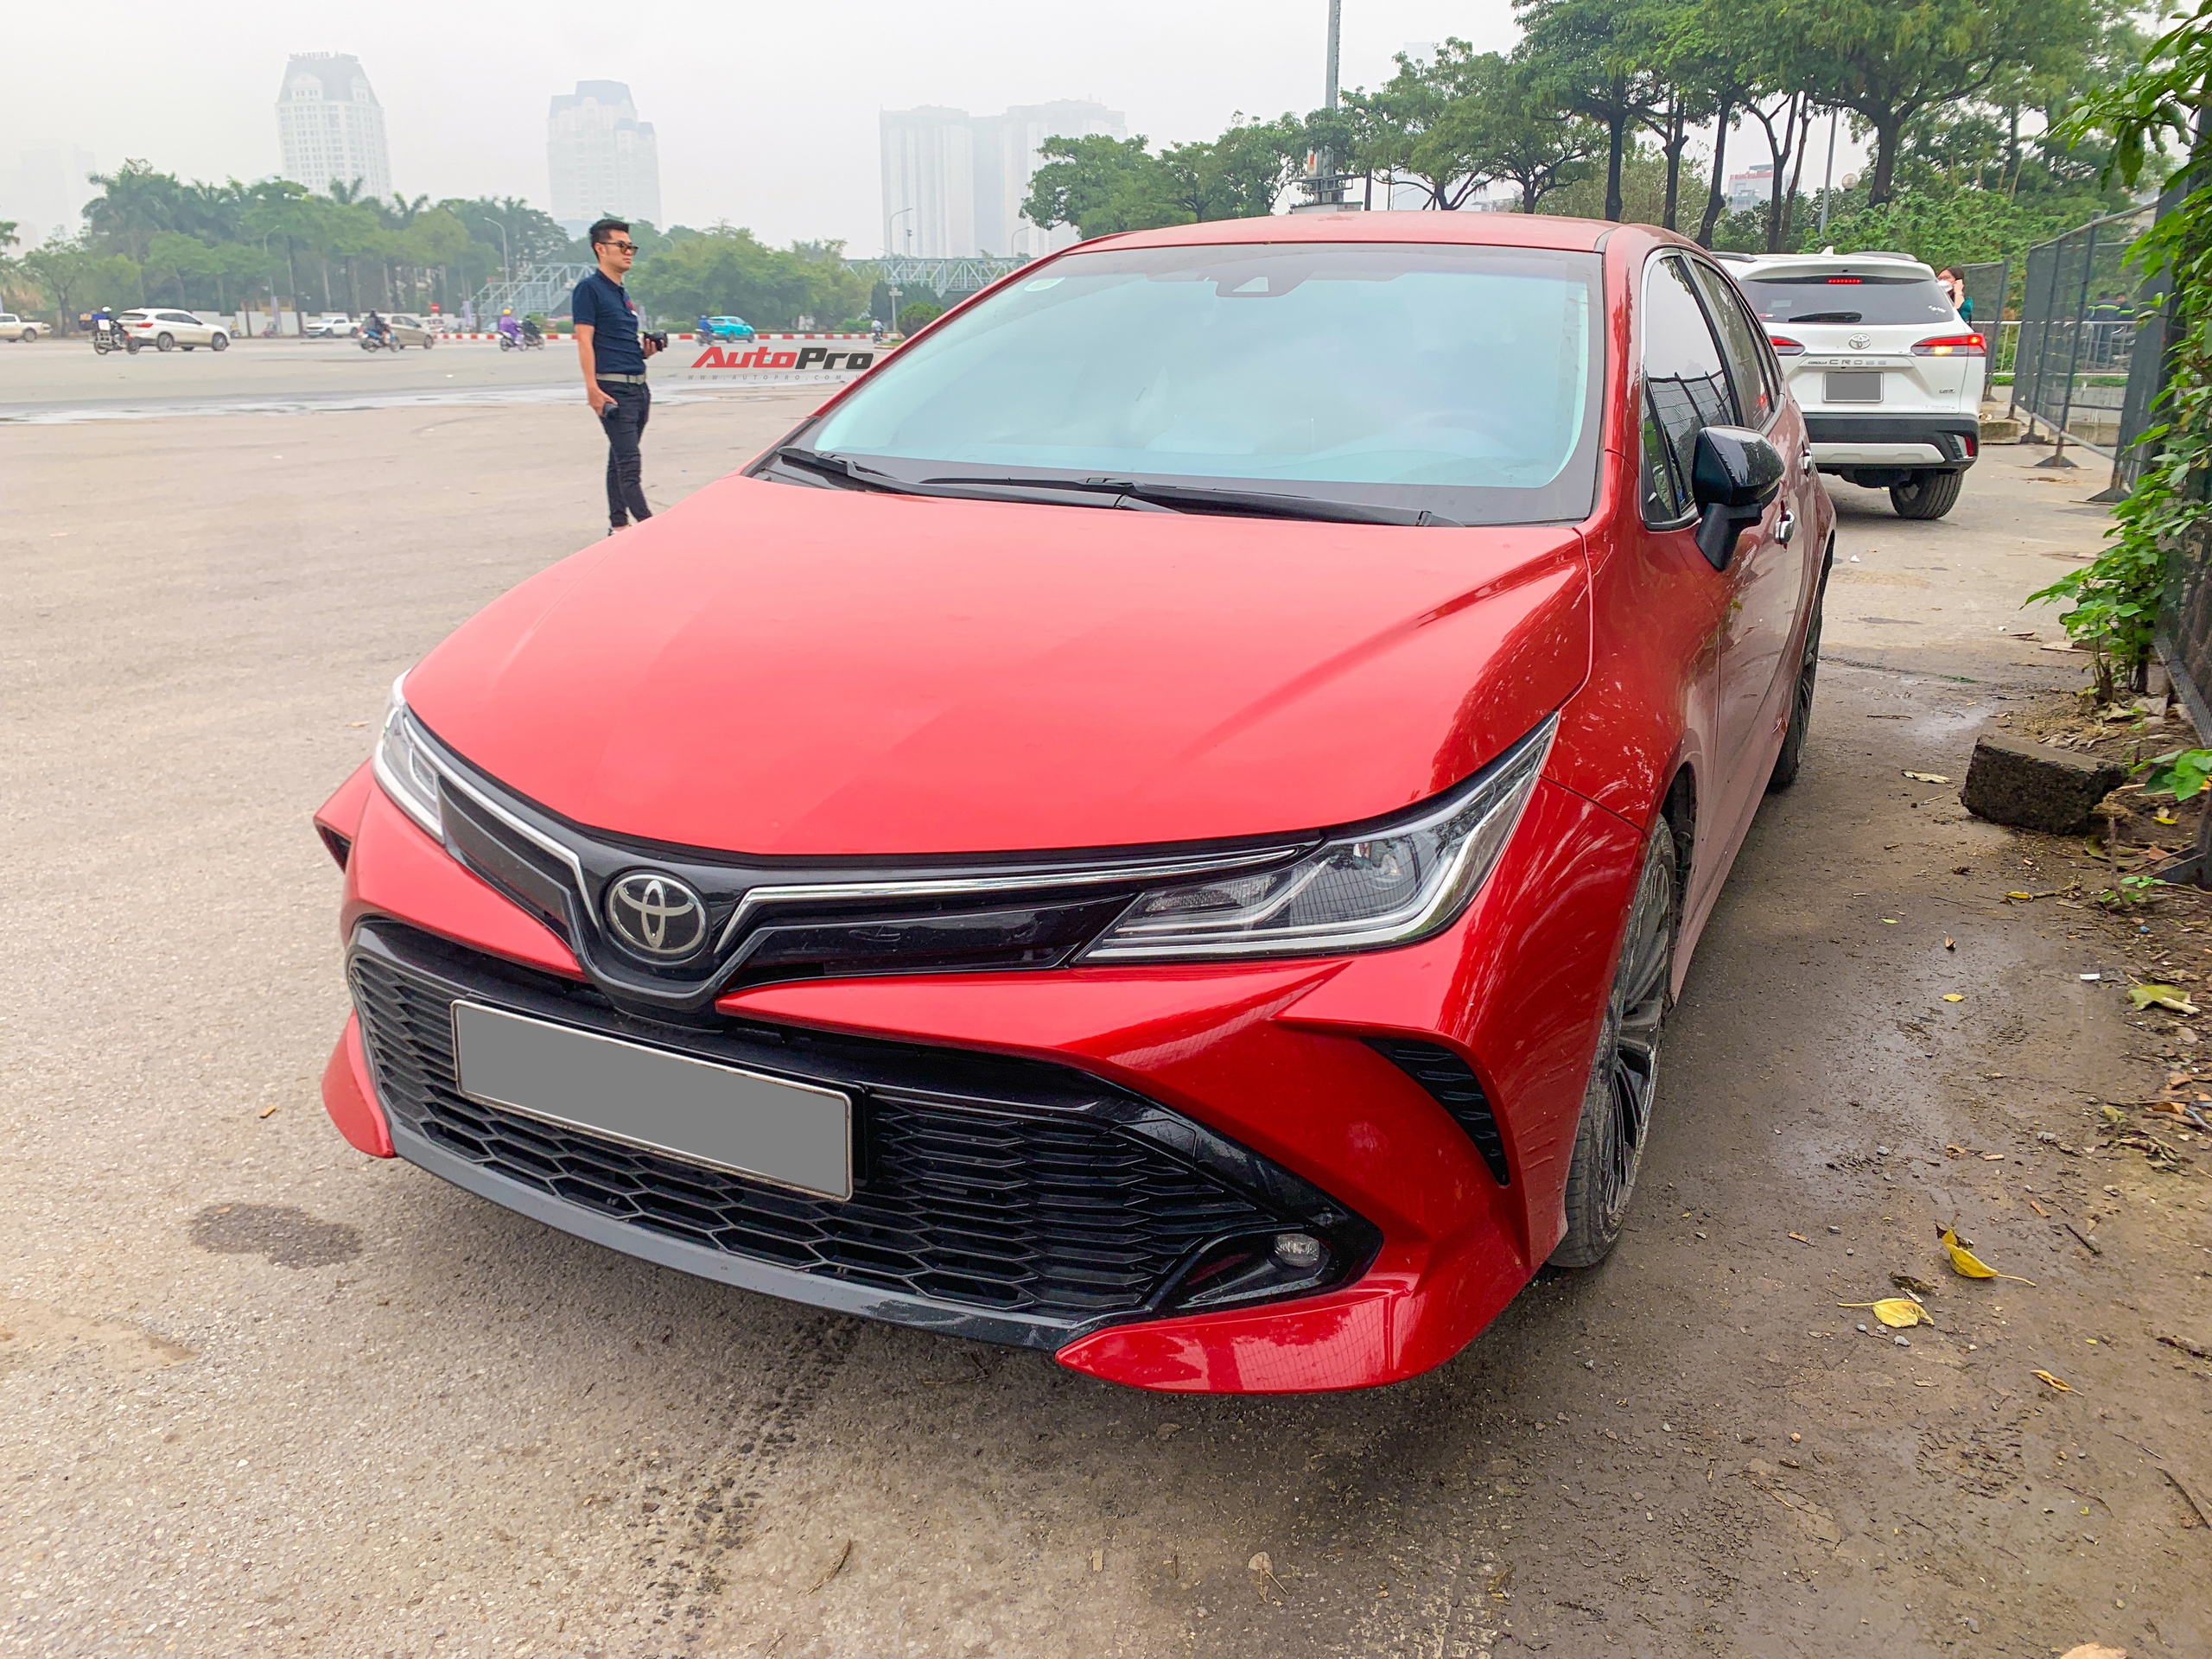 Toyota Corolla Altis GR Sport đầu tiên xuất hiện tại Việt Nam: Ngoại hình hầm hố khác hẳn phong cách ‘doanh nhân’, đấu Civic RS - ảnh 11